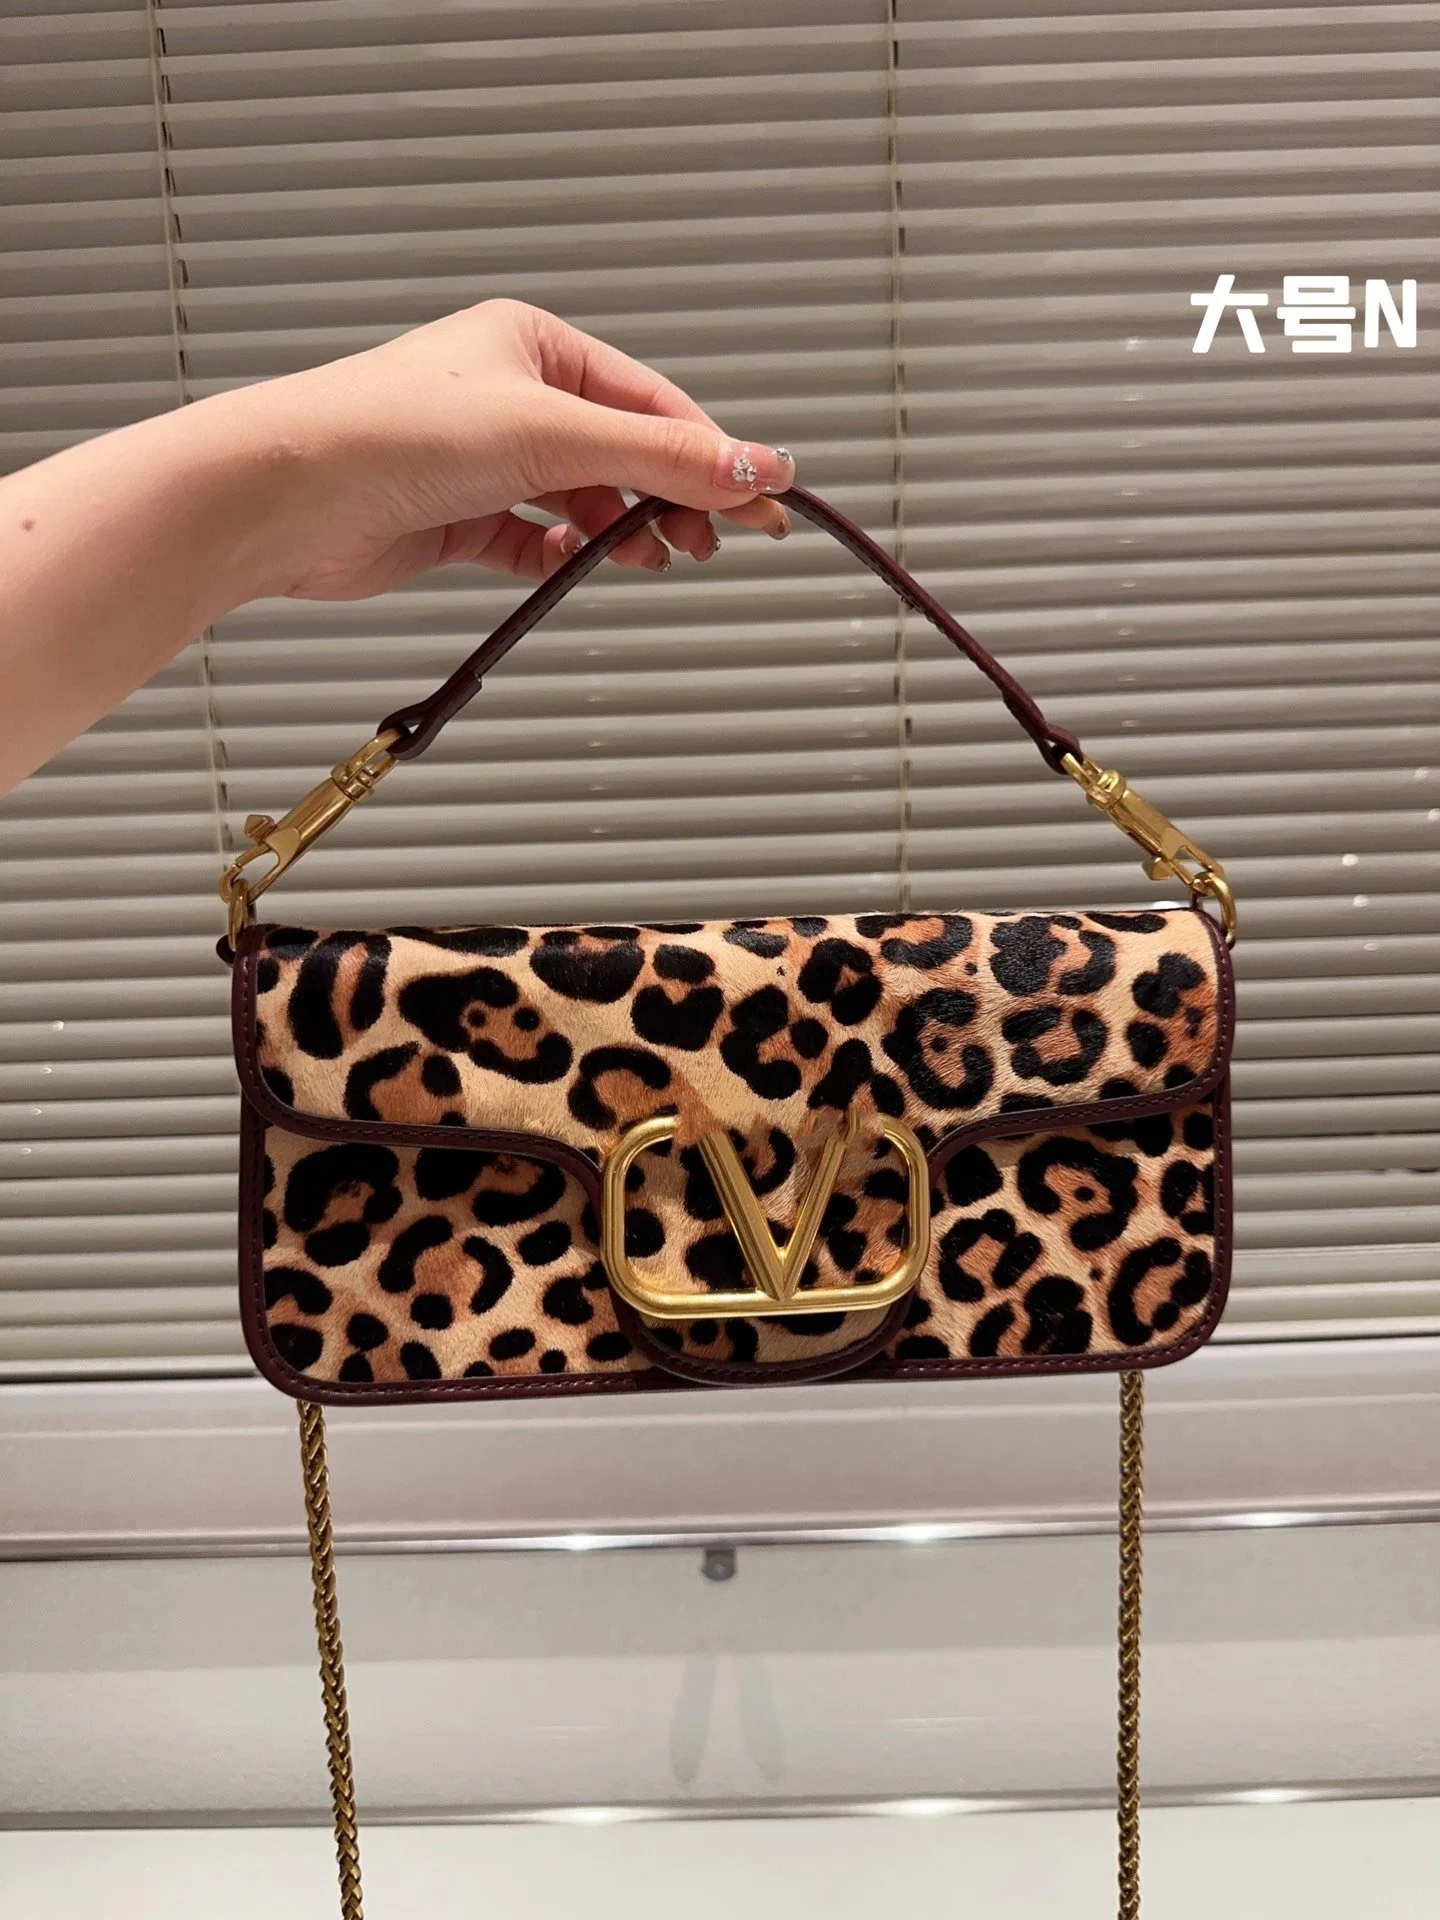 24 Years Hot Selling Replica Bag Designer Designed Market Low Price Hot Selling Women's Handbag Bag Travel Bag Leopard Shoulder Clutch Wallet Backpack Bags